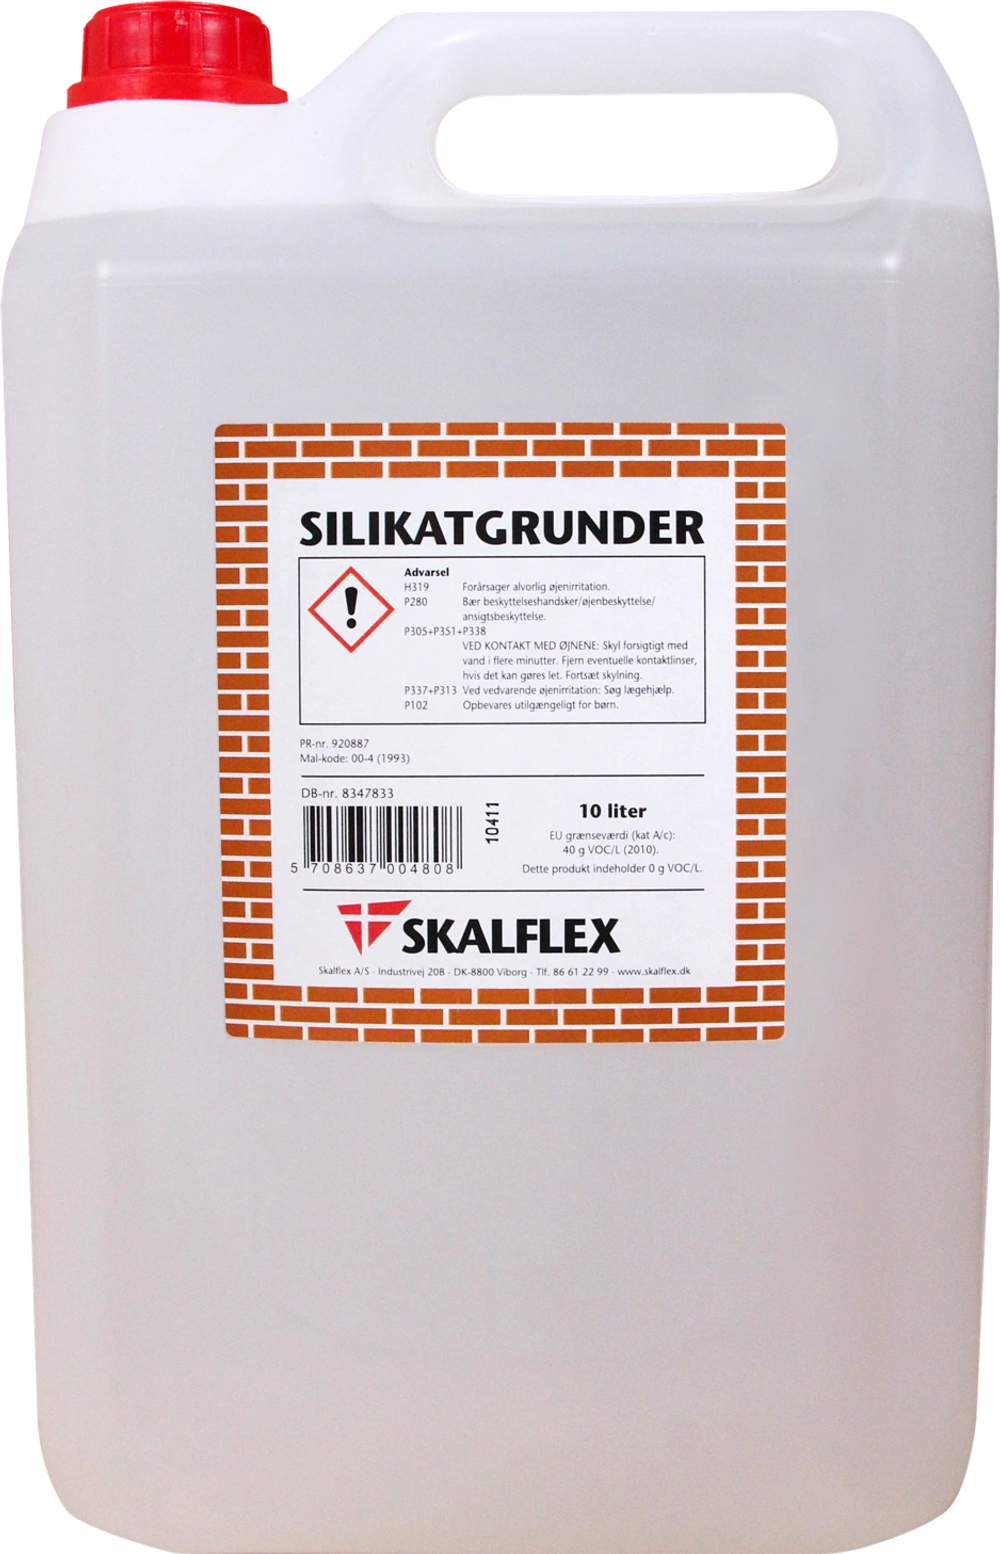 Tilbud på Skalflex grunder fra Davidsen til 860 kr.